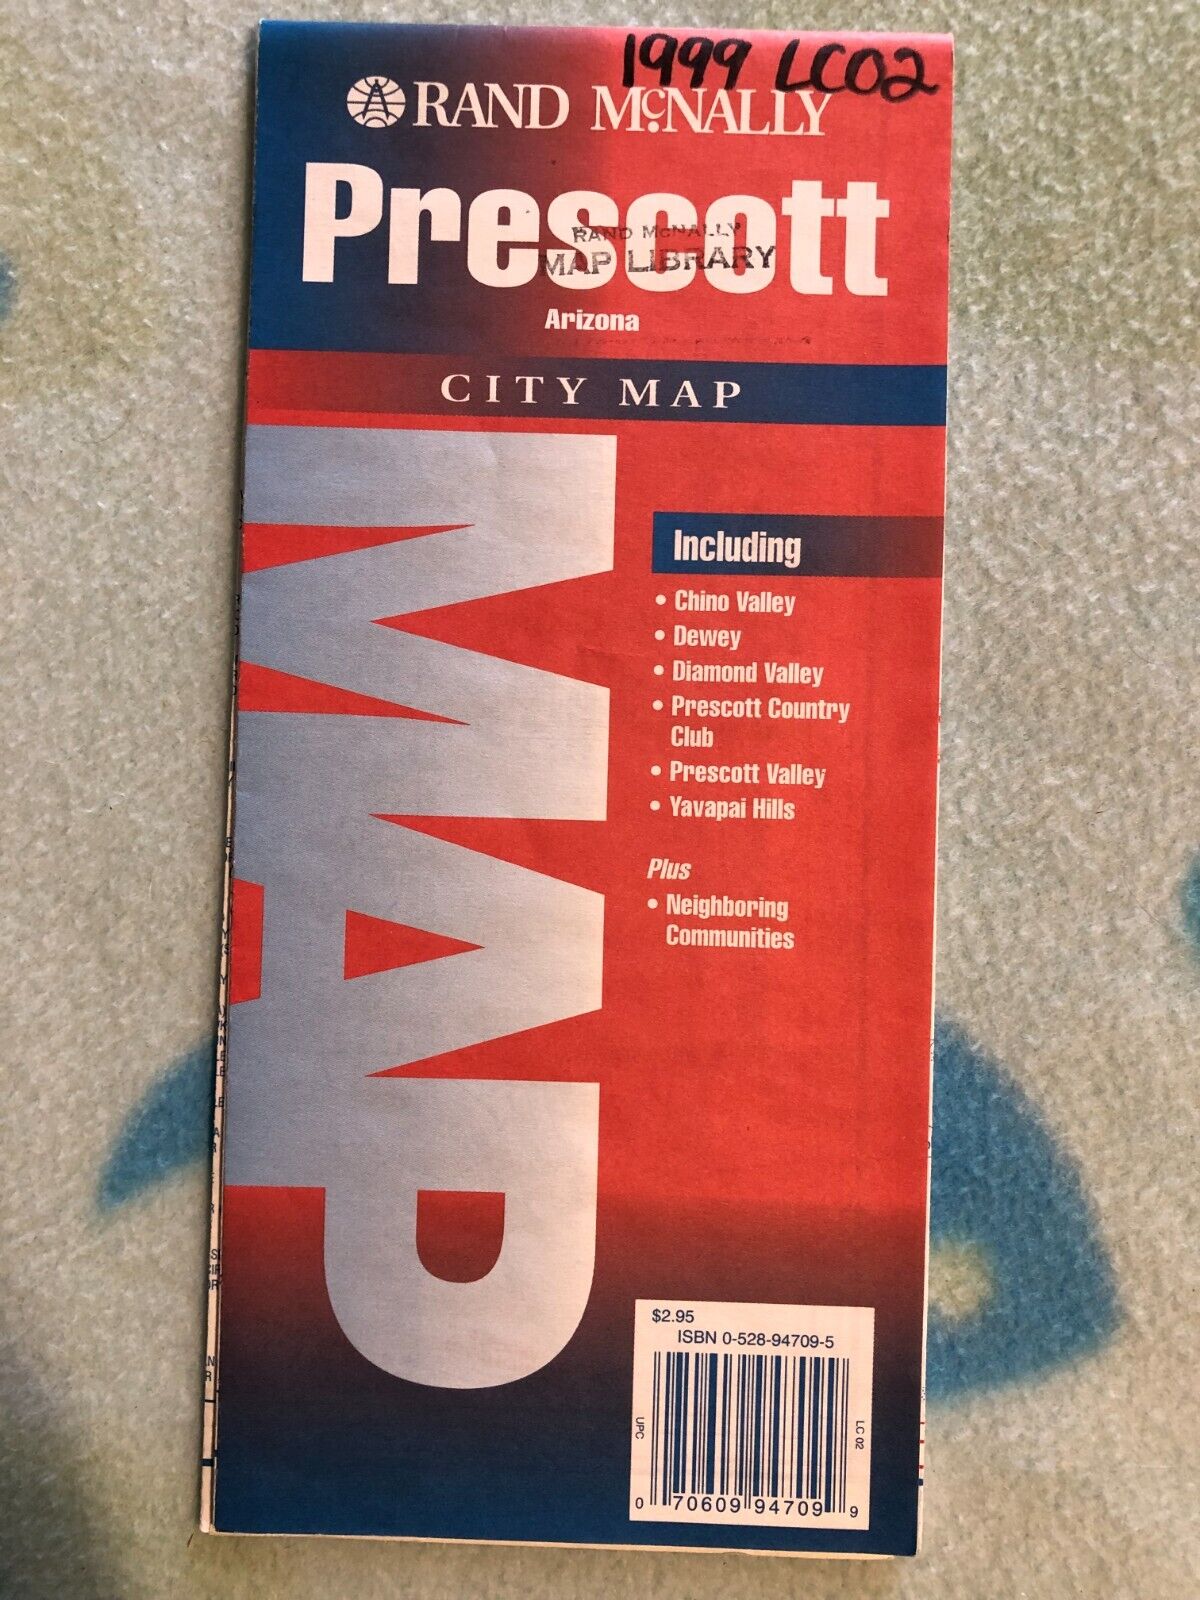 825 - Prescott Arizona City Map - 1999 - Rand Mcnally